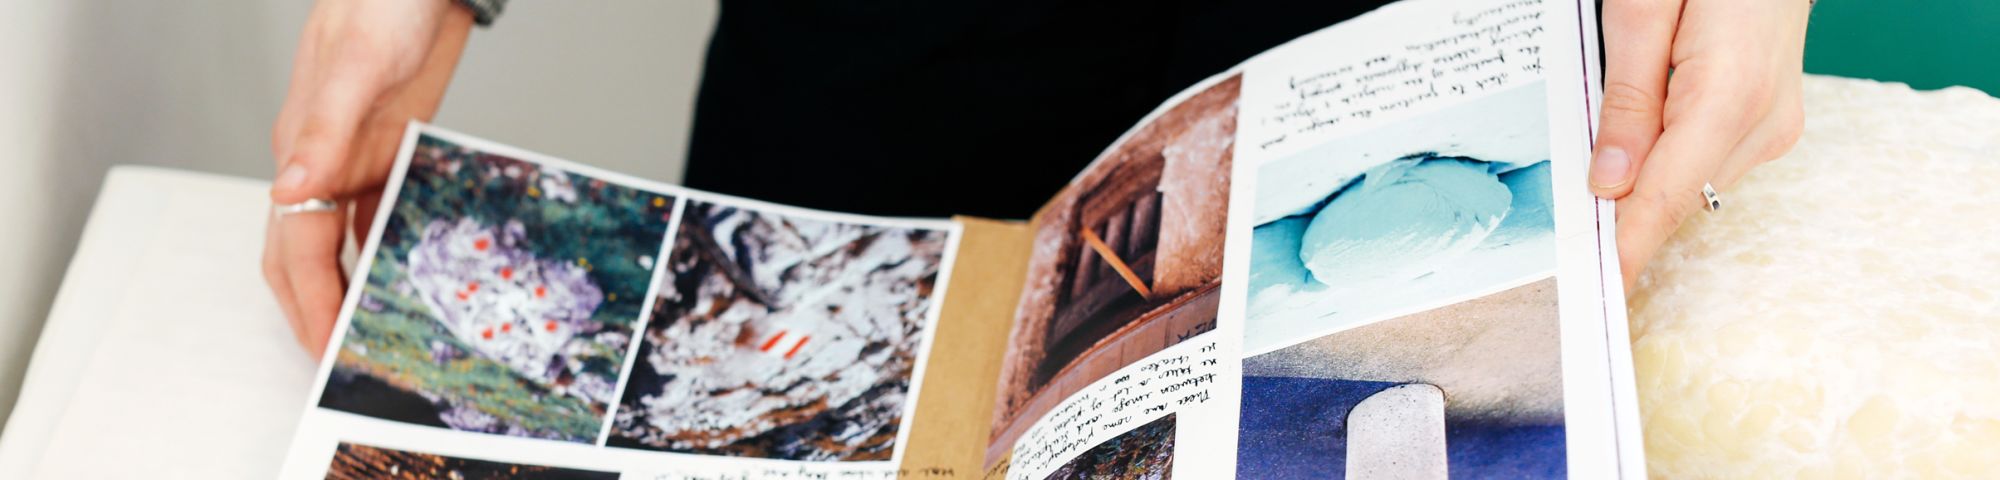 Hands leafing through a portfolio with photos inside